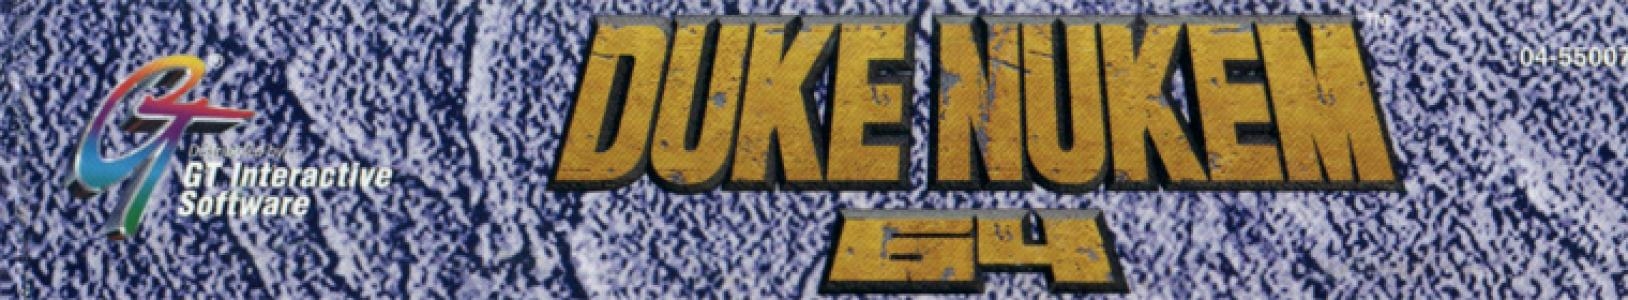 Duke Nukem 64 banner